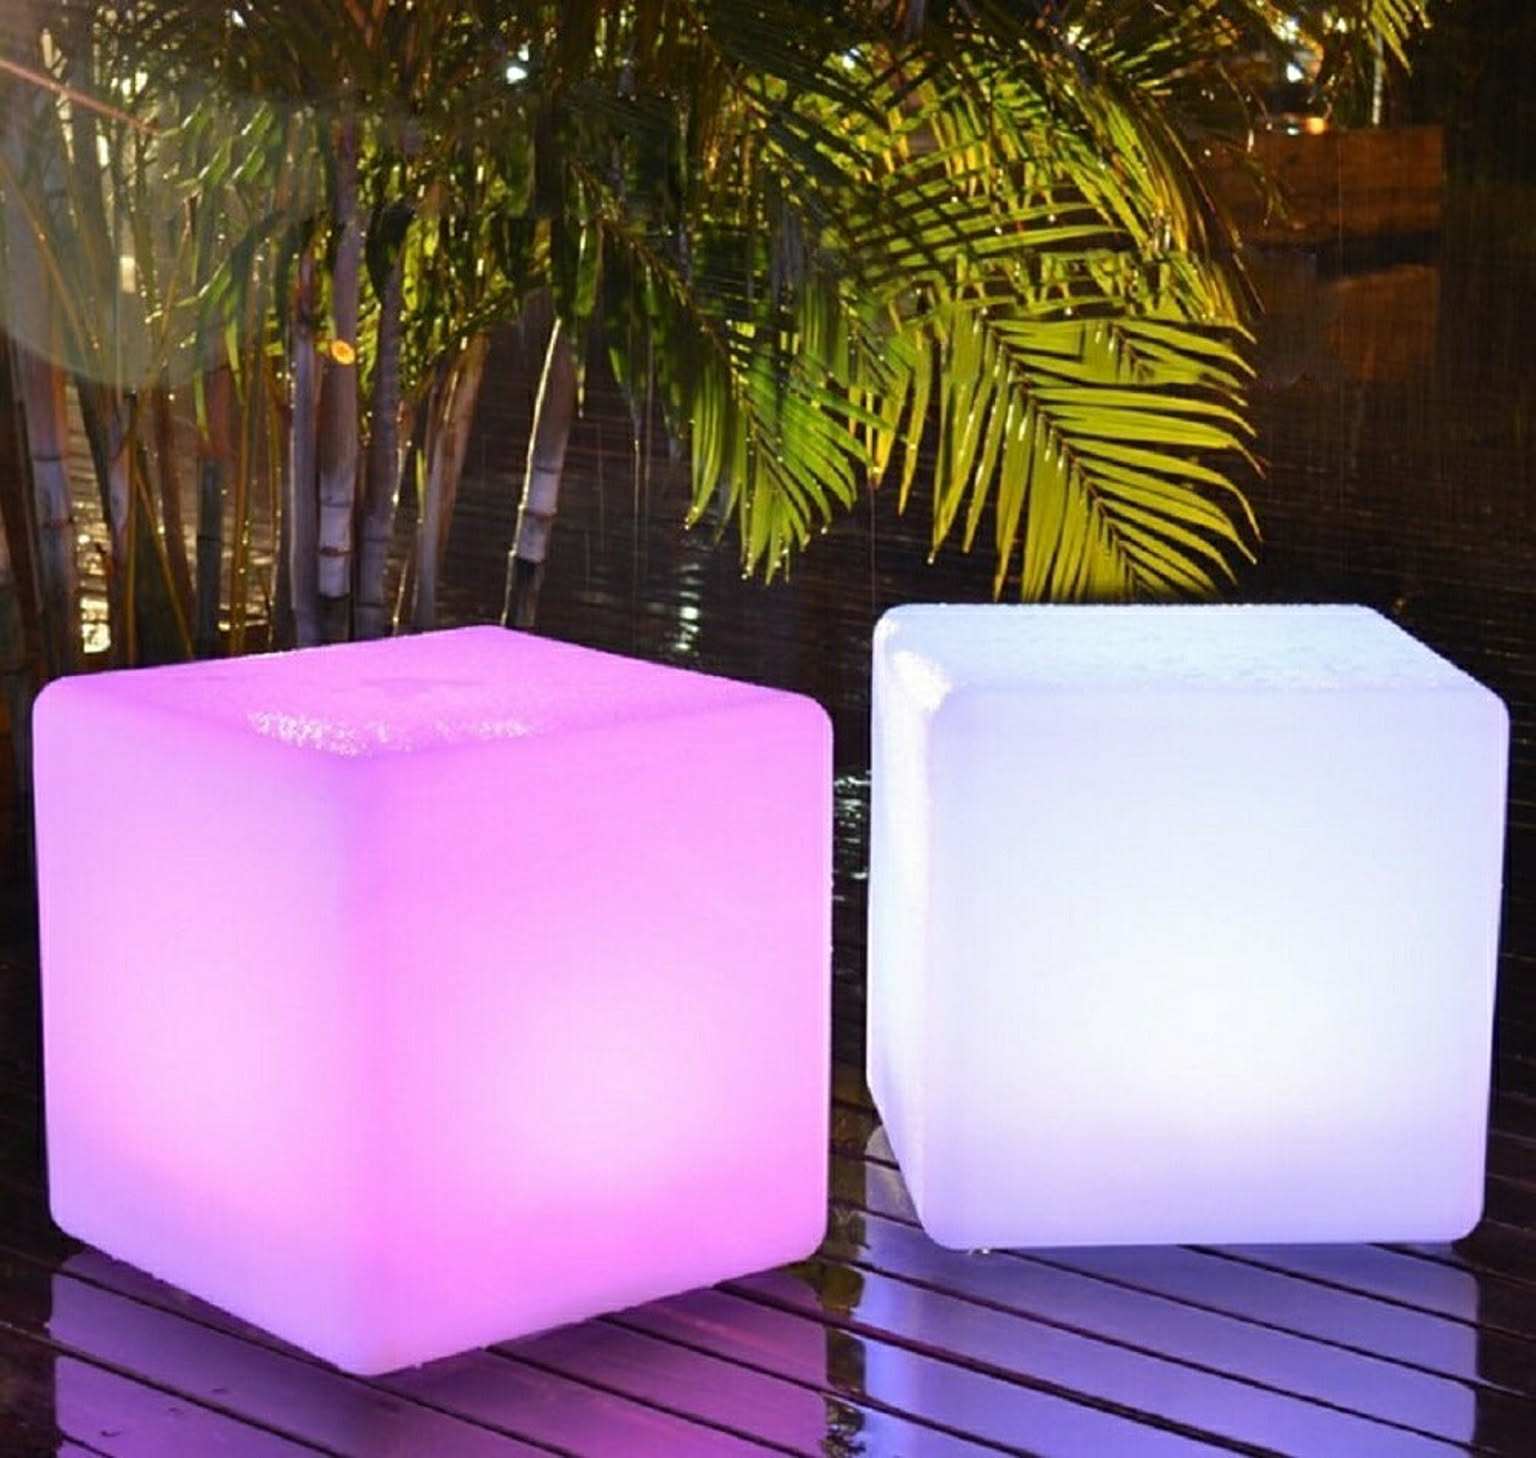 12色 LED ボックス チェア スツール おしゃれ コンパクト 充電式 パーティー 光る チェアー 椅子 小さい 低め スクエア 正方形 ミニ クラブ バー デザイン